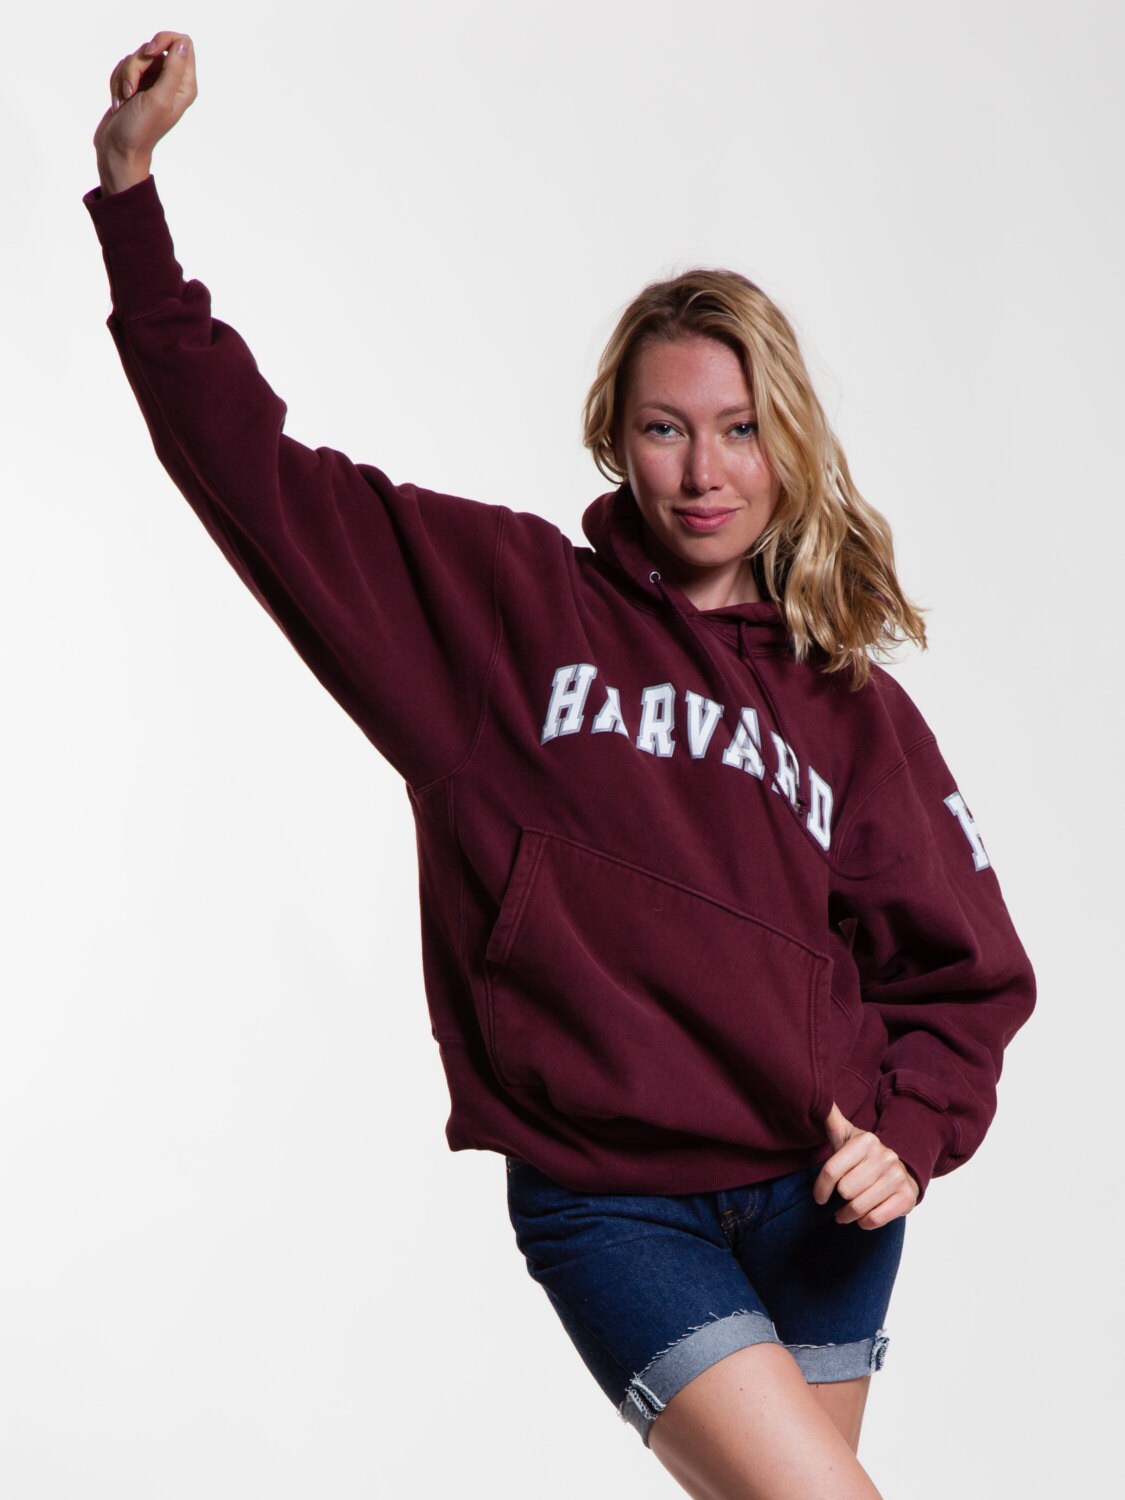 Vintage Harvard University College Hooded Sweatshirt Champion